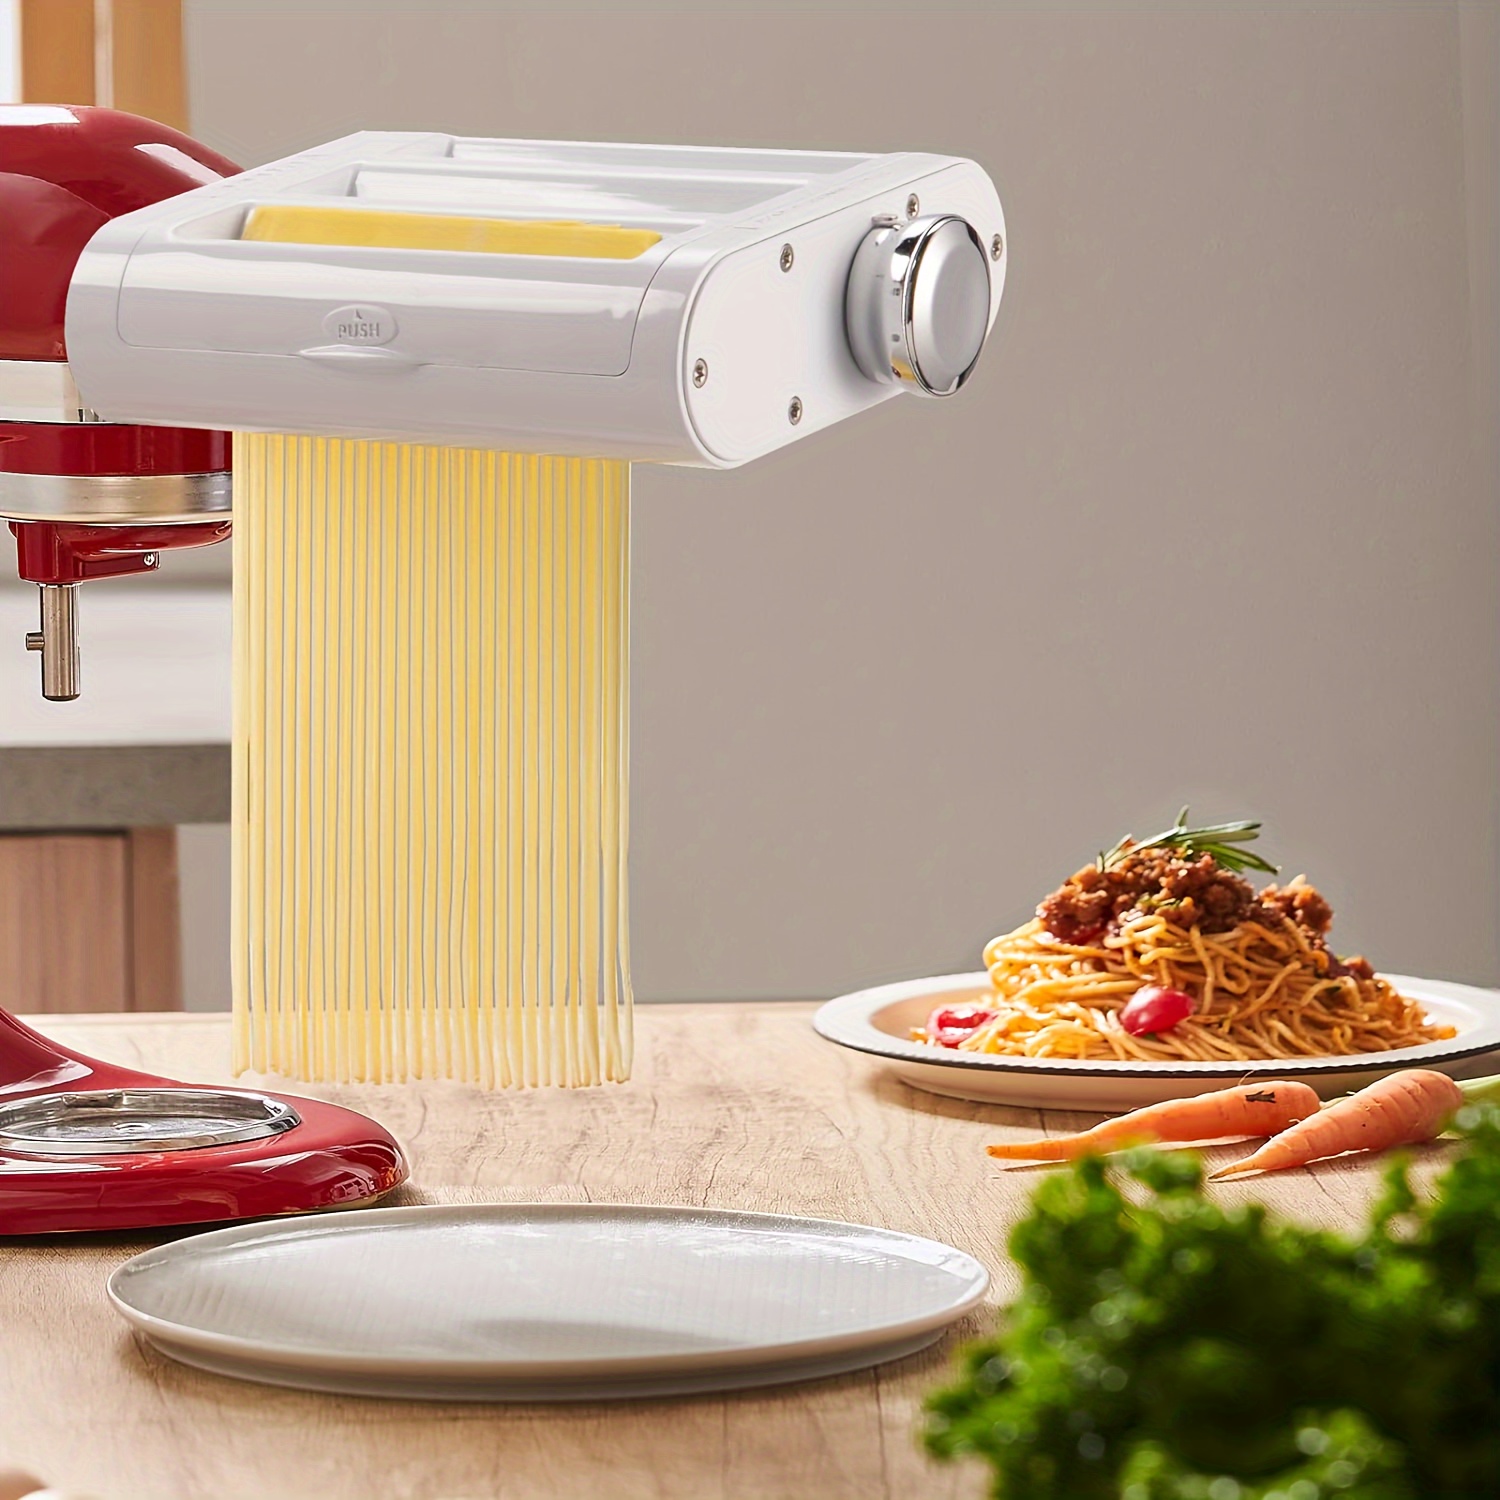  Máquina para hacer pasta, máquina para hacer pasta de 150  rodillos, 7 ajustes de grosor ajustables, máquina de fideos 2 en 1 con  rodillos y cortador, perfecta para pieles de espaguetis